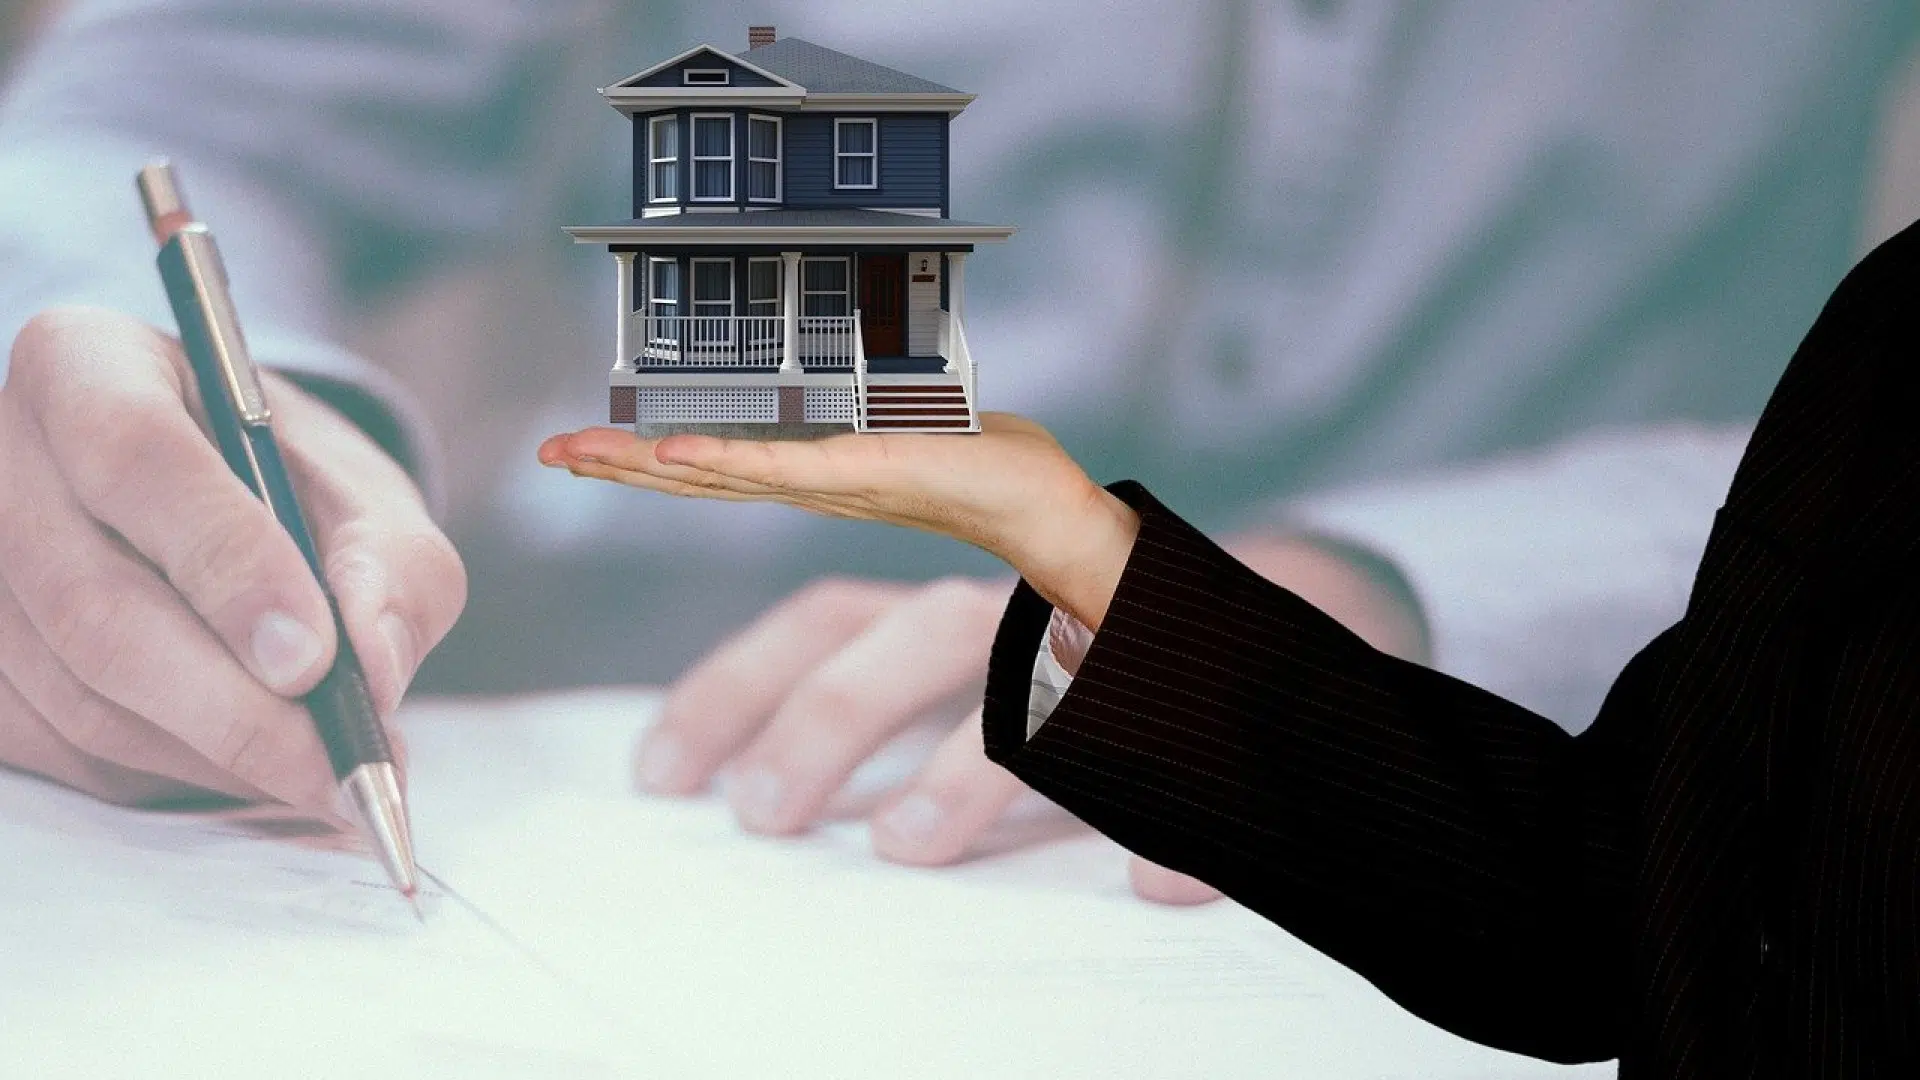 Pourquoi faire confiance à une agence immobilière ?